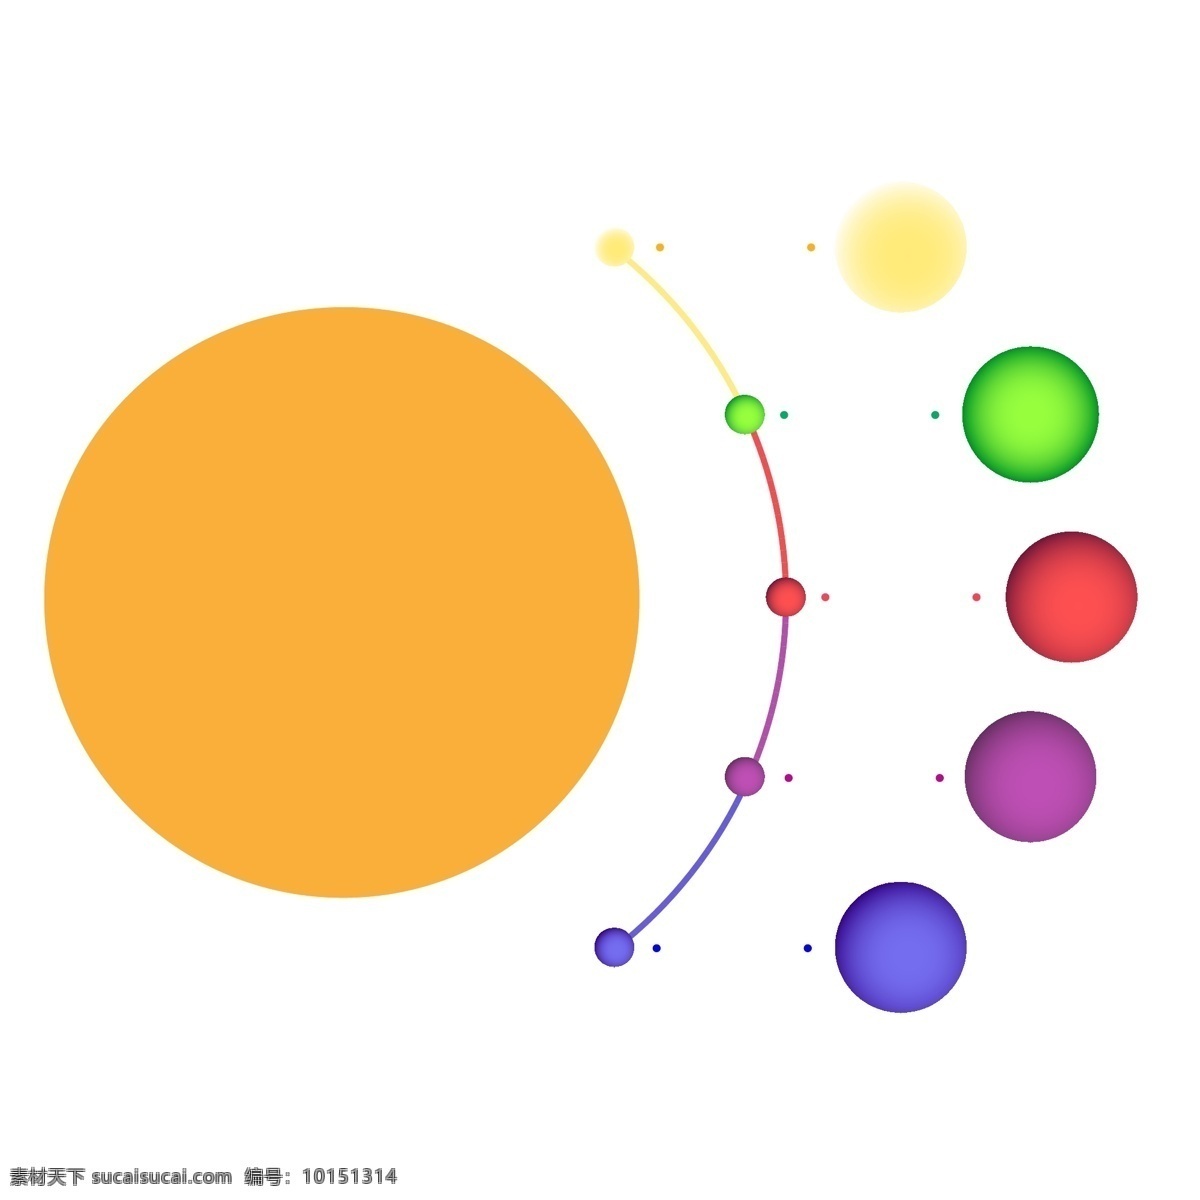 商务 矢量 数据 圆形 分散 图表 ppt图表 信息图表卡通 信息图表装饰 彩色信息图表 矢量信息图表 商务图表 数据信息 环形图表 时间轴 科技